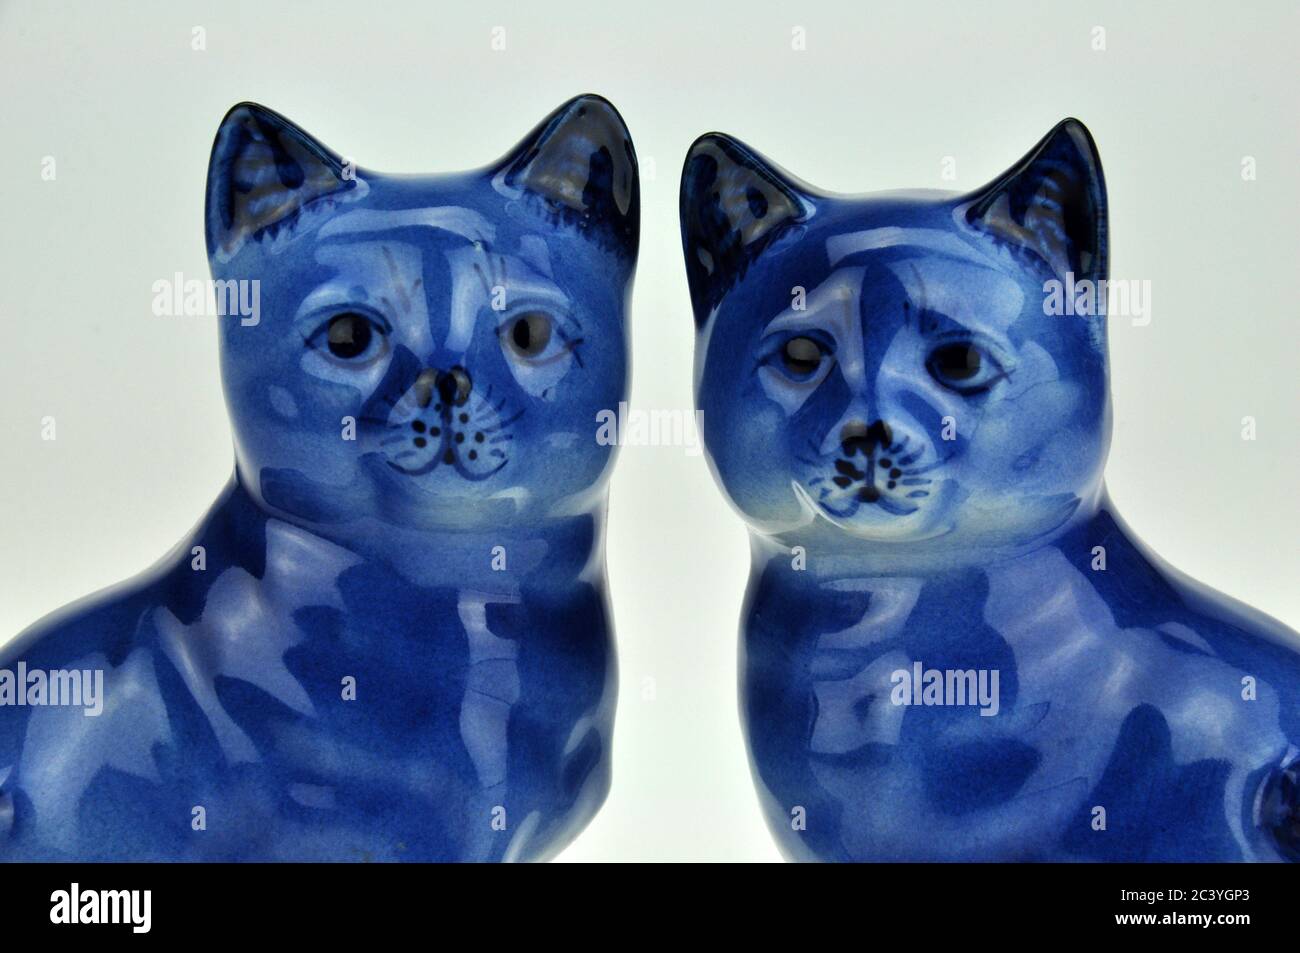 Figurines de chat en porcelaine chinoise bleue et blanche. Excellente image pour l'amitié, le mariage et la fidélité. Banque D'Images